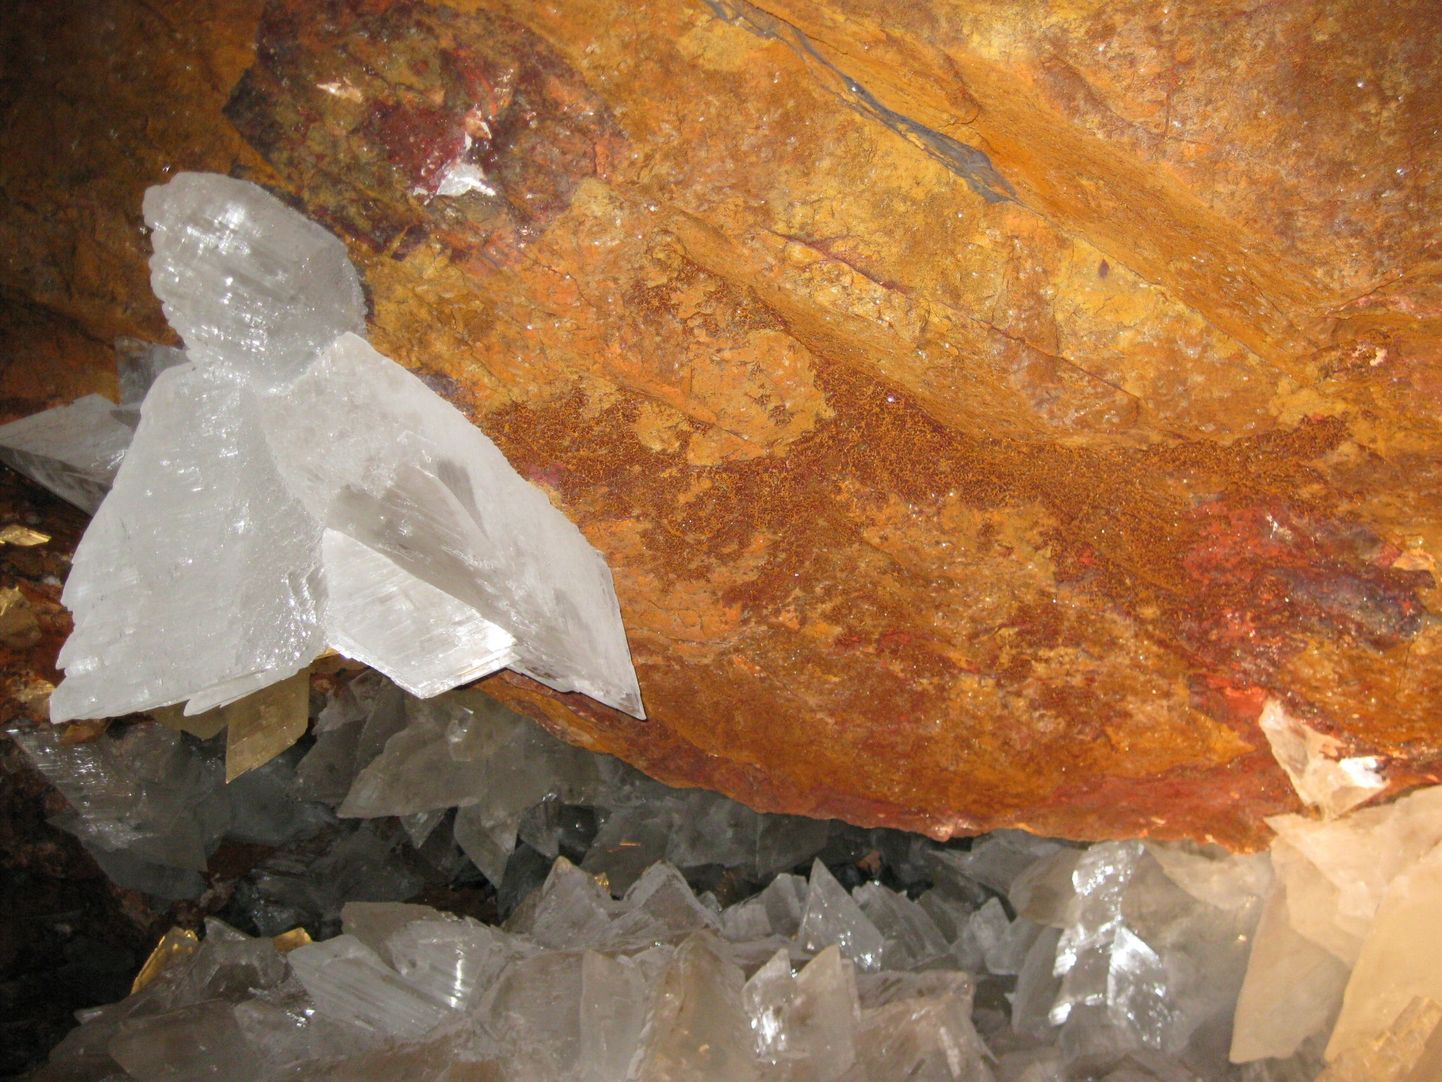 Живущие в кристаллах организмы, по оценкам ученых, находились в изолированном состоянии в течение 10-60 тысяч лет.